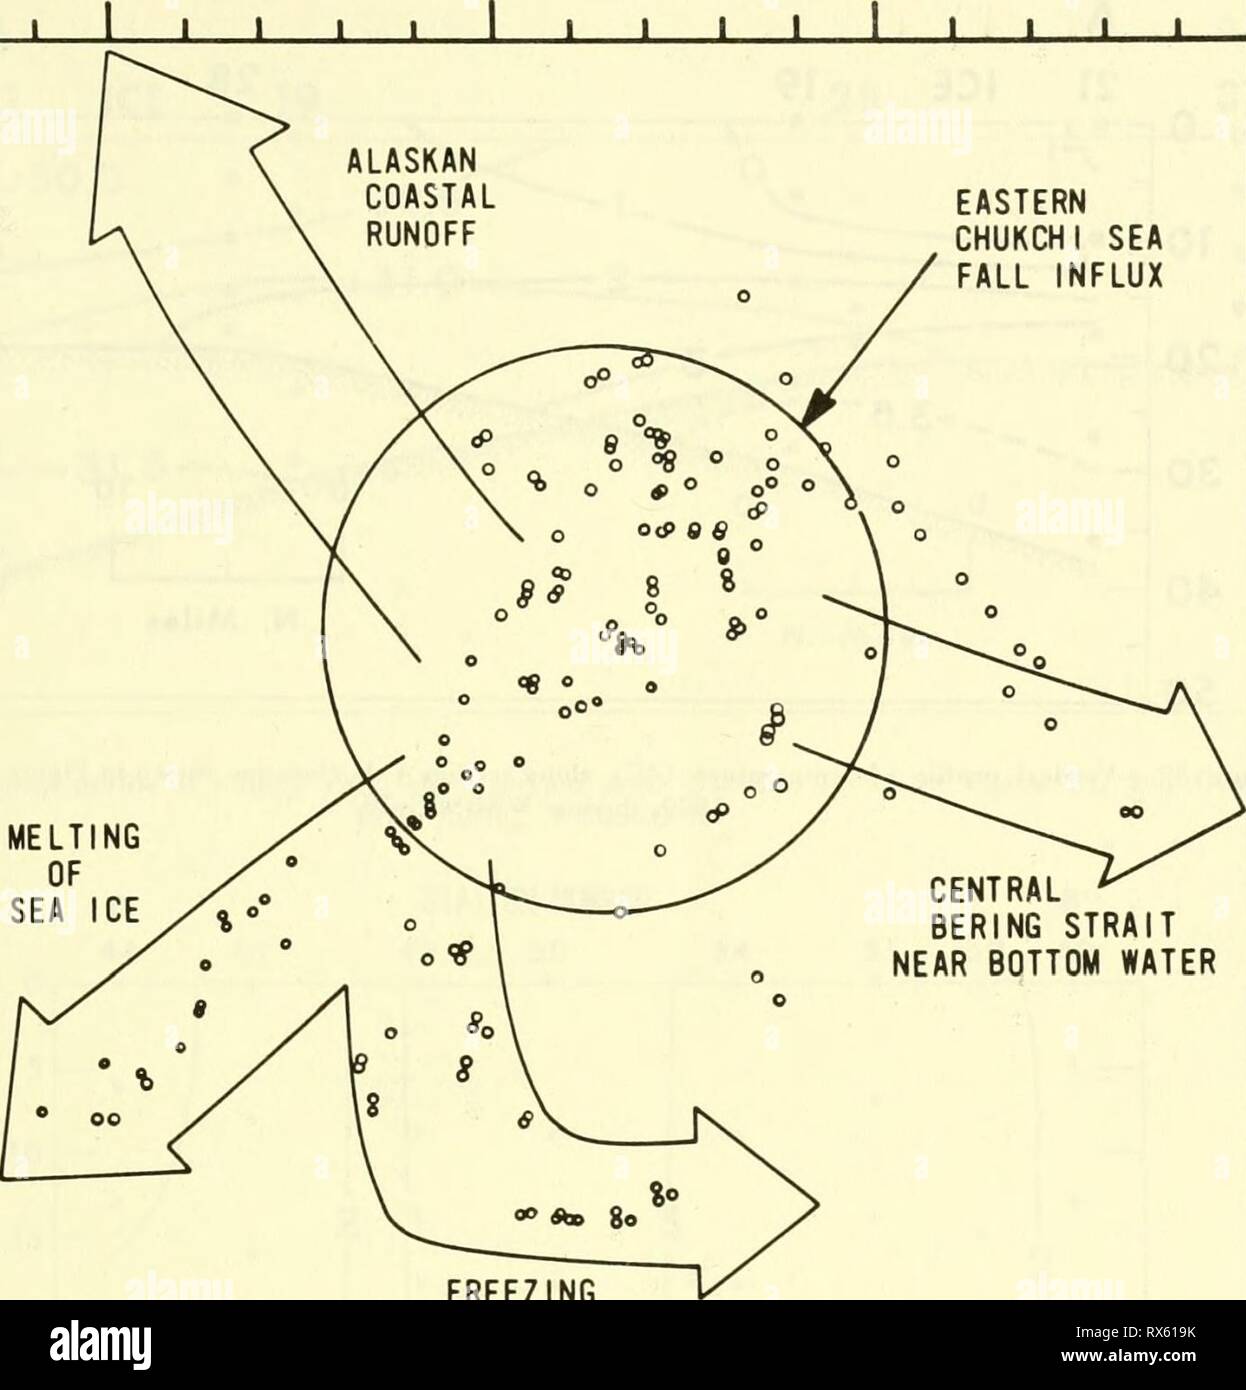 Un sondaggio ecologico in un sondaggio ecologico nella zona orientale del Mare Chukchi : settembre-ottobre 1970 ecologicalsurvey00Unità Anno: 1972 T E M P E R A T U R E 5 - 4 - 3 - 2 - 1 - 0 - 2 - J I I L EST MARE CHUKCHI caduta afflusso dello stretto di Bering vicino a fondo il congelamento di acqua -| T 30 1-'-'-'- 31 SALINITYo 'T' 32 Io ho 33 di figura 36.-temperatura osservata ('C)-saIinity (o) valori durante la WEBSEC-70, Settembre-Ottobre 1970 e processi o masse d'acqua che influenzano le proprietà dell'est mare Chukchi caduta afflusso, 47 Foto Stock